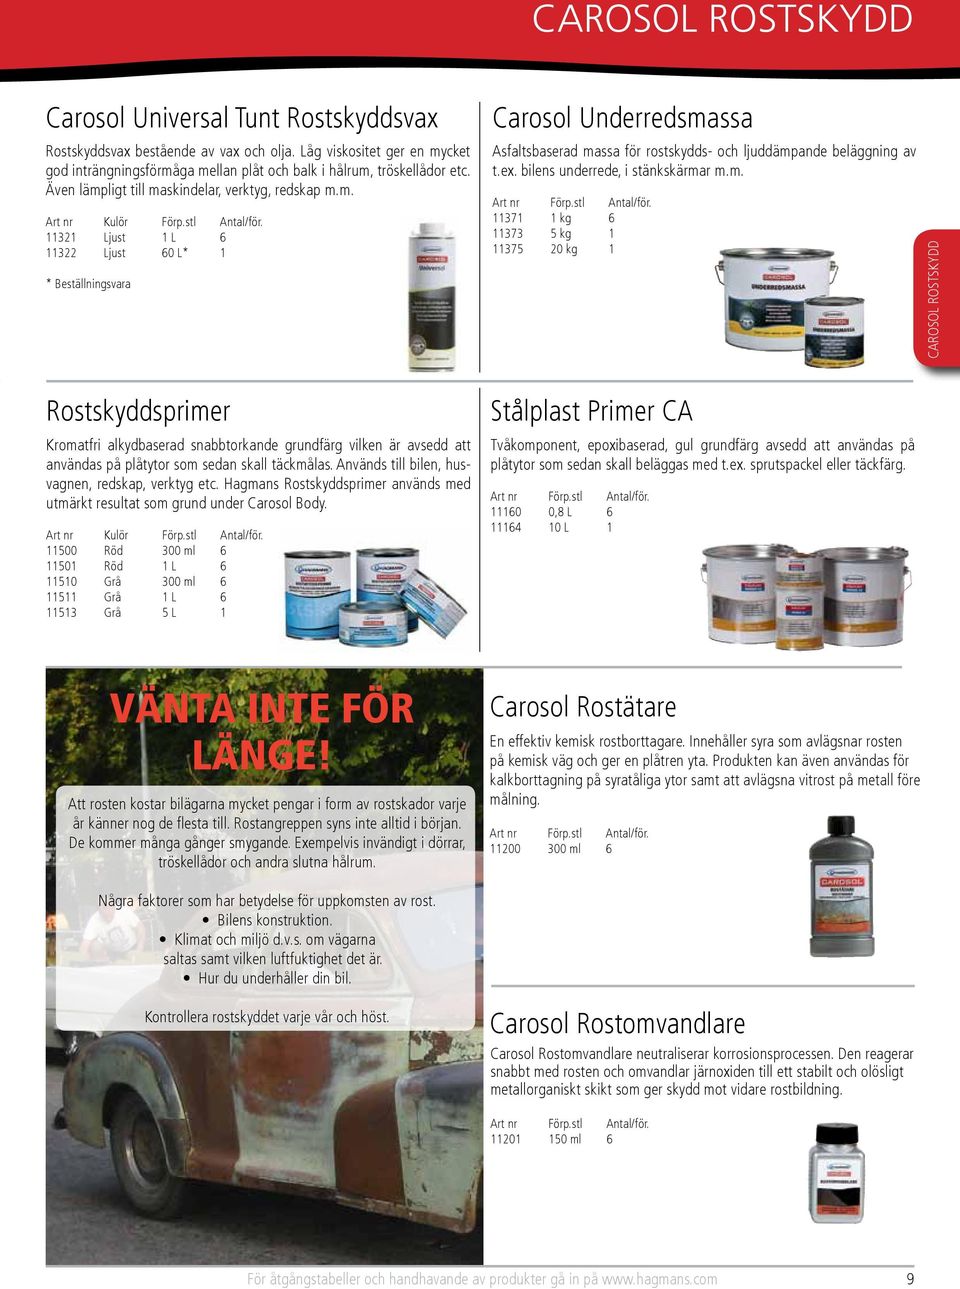 Används till bilen, husvagnen, redskap, verktyg etc. Hagmans Rostskyddsprimer används med utmärkt resultat som grund under Carosol Body.